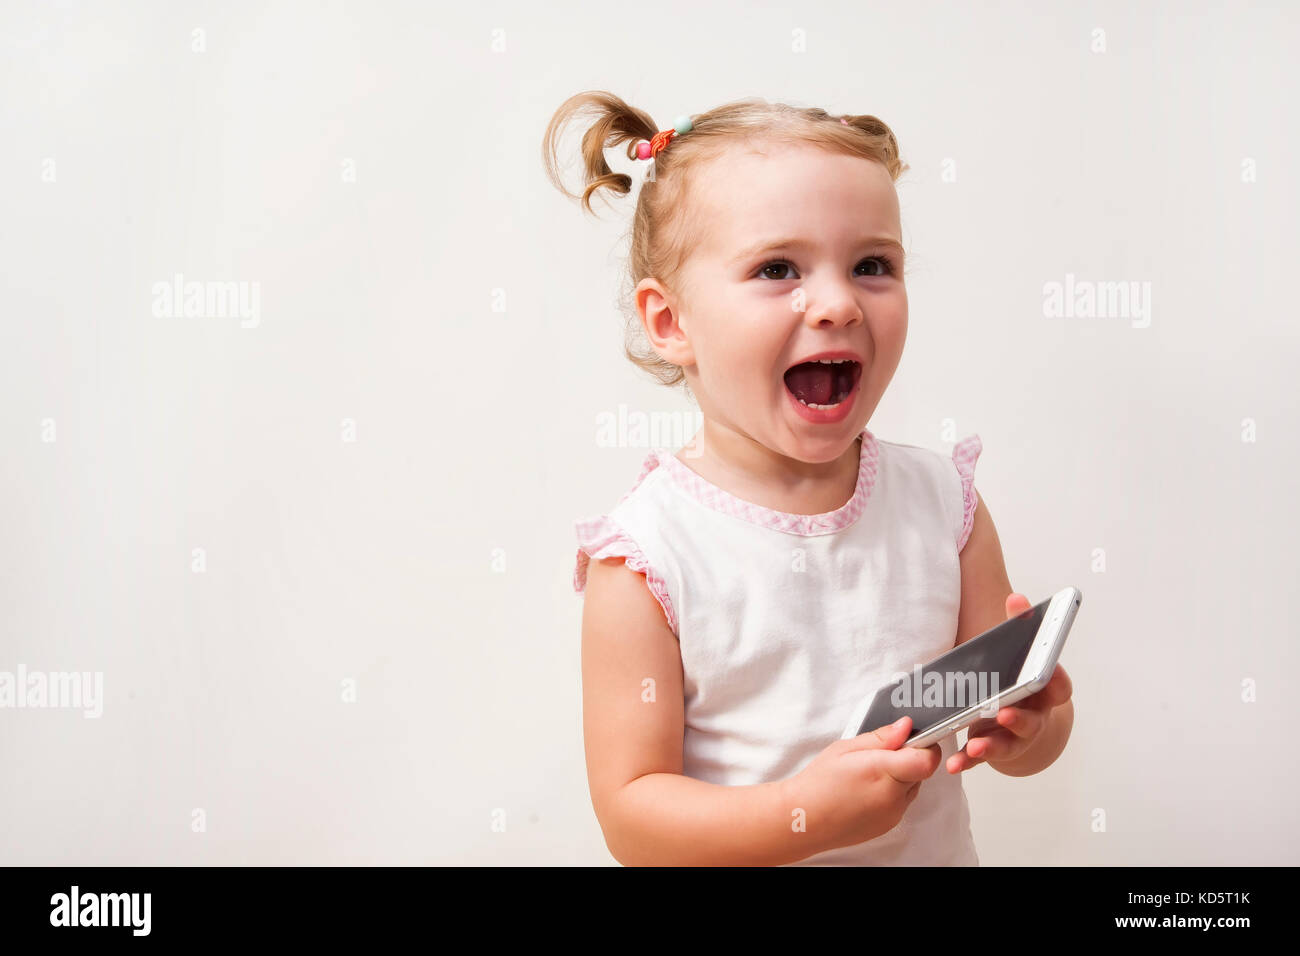 Bambina gioca con un telefono cellulare isolato su uno sfondo bianco Foto Stock